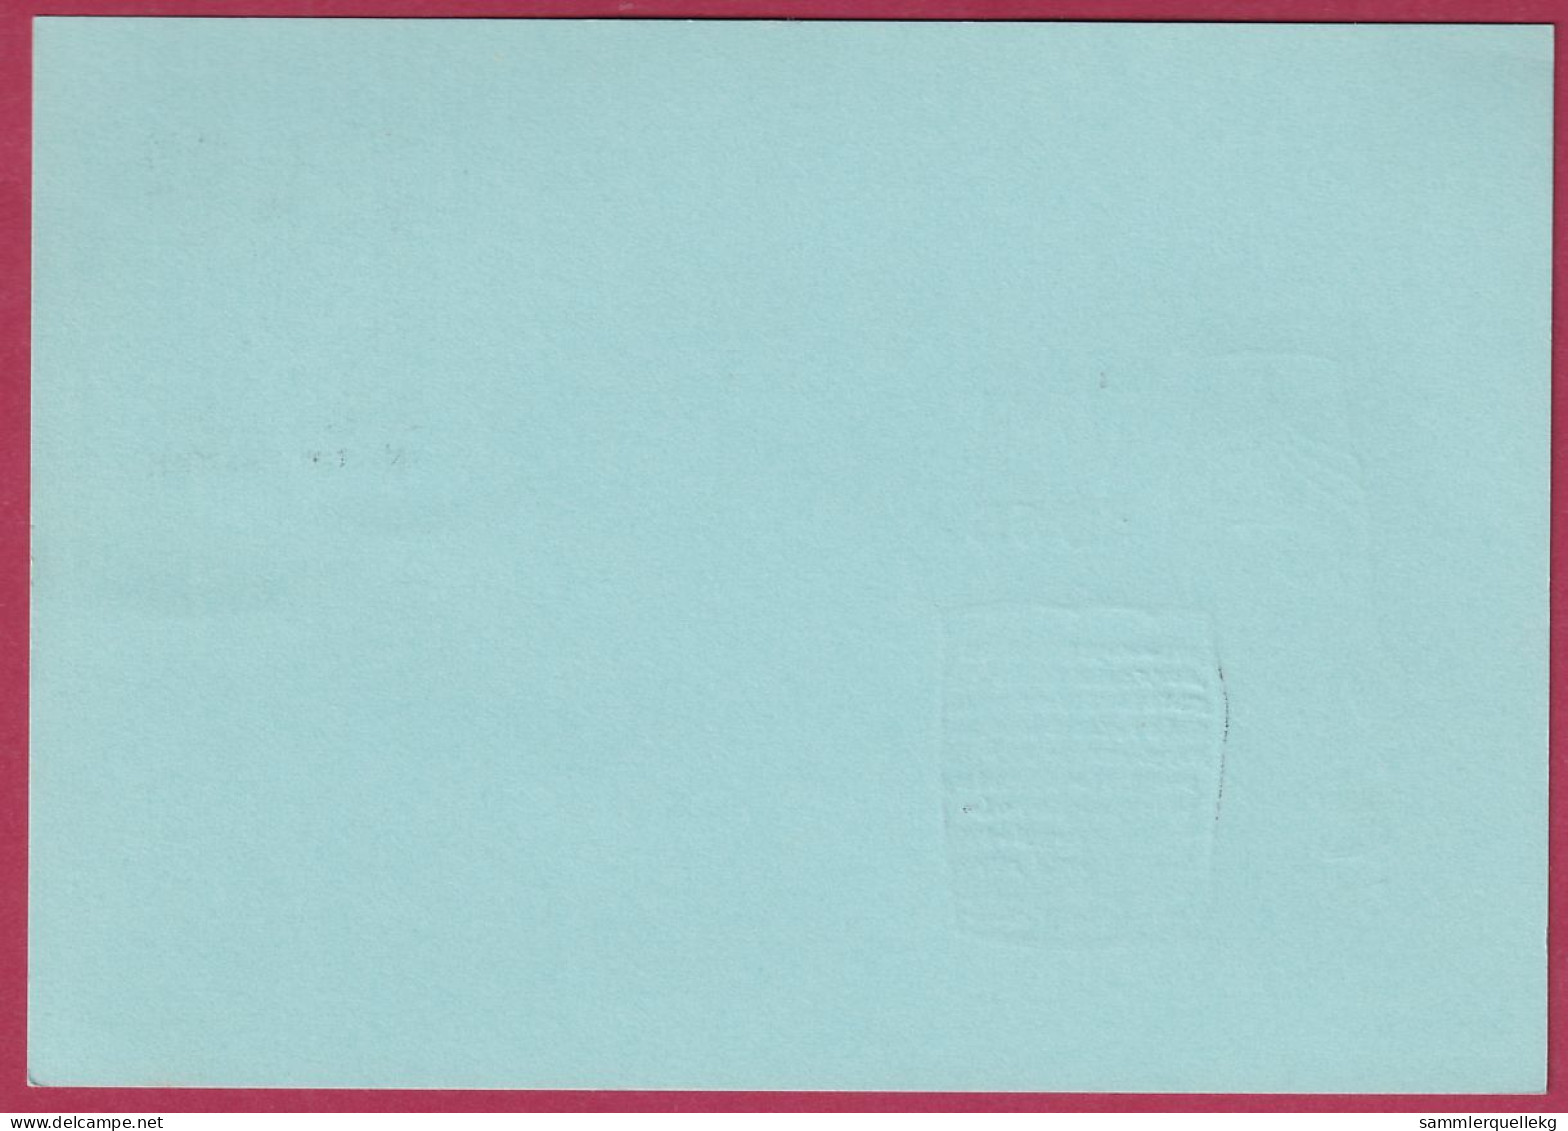 Österreich MNr.1184 Sonderstempel 12. Juni 1965 WIPA St. Gabriel - Briefe U. Dokumente